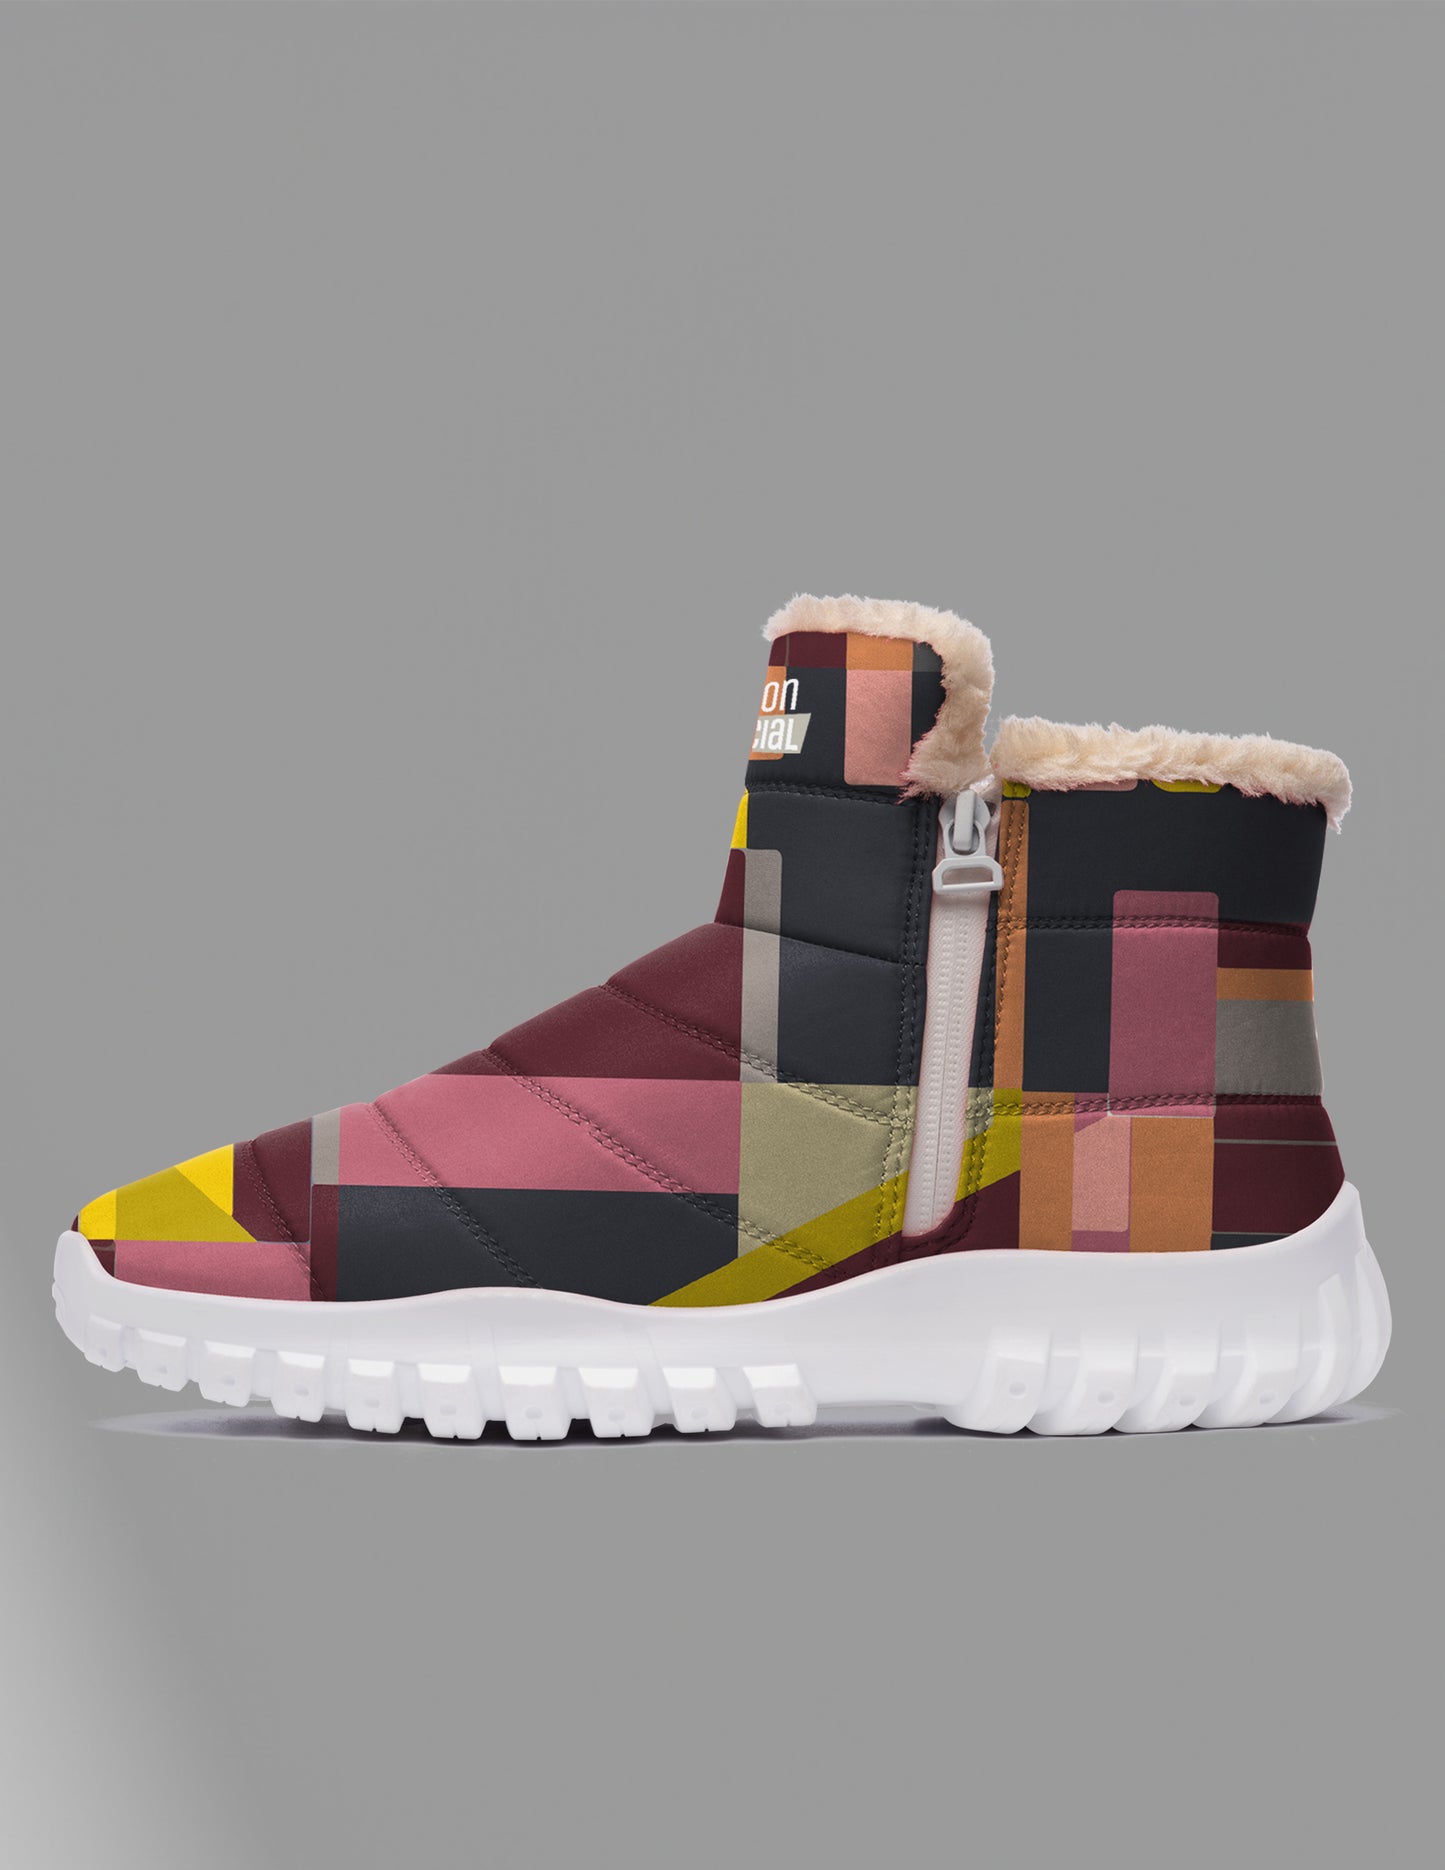 Multi-color winter boots